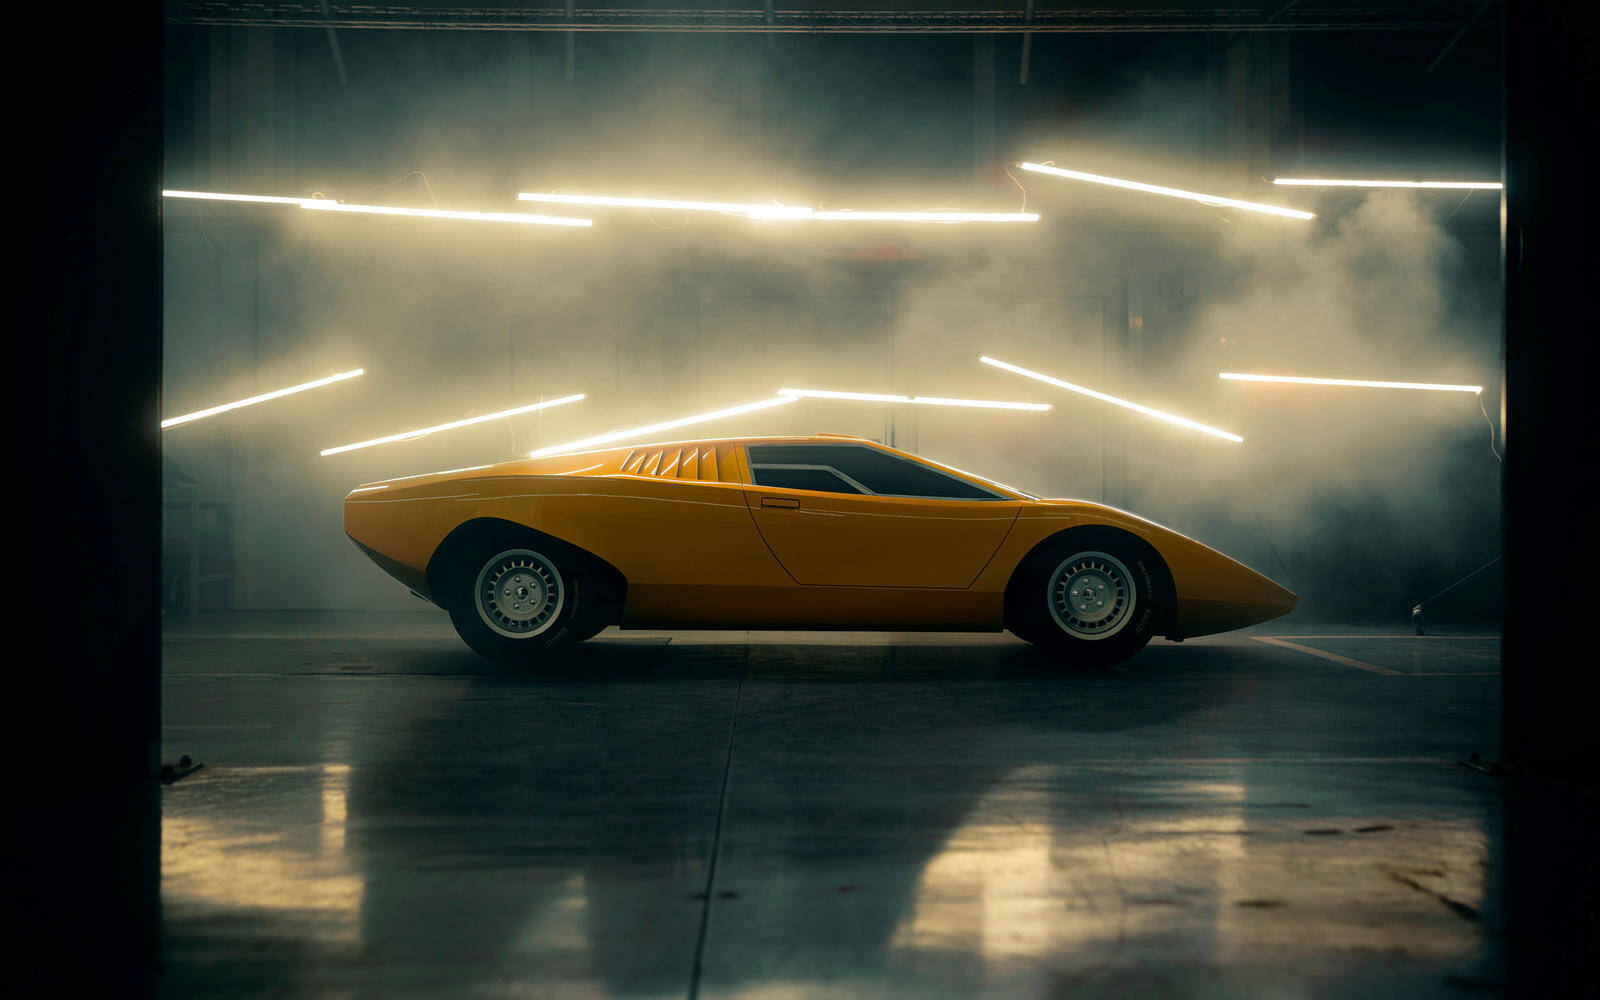 Lamborghini recrée la Countach LP 500 originale et elle est sublime 490130-lamborghini-recree-la-countach-lp-500-originale-et-elle-est-sublime